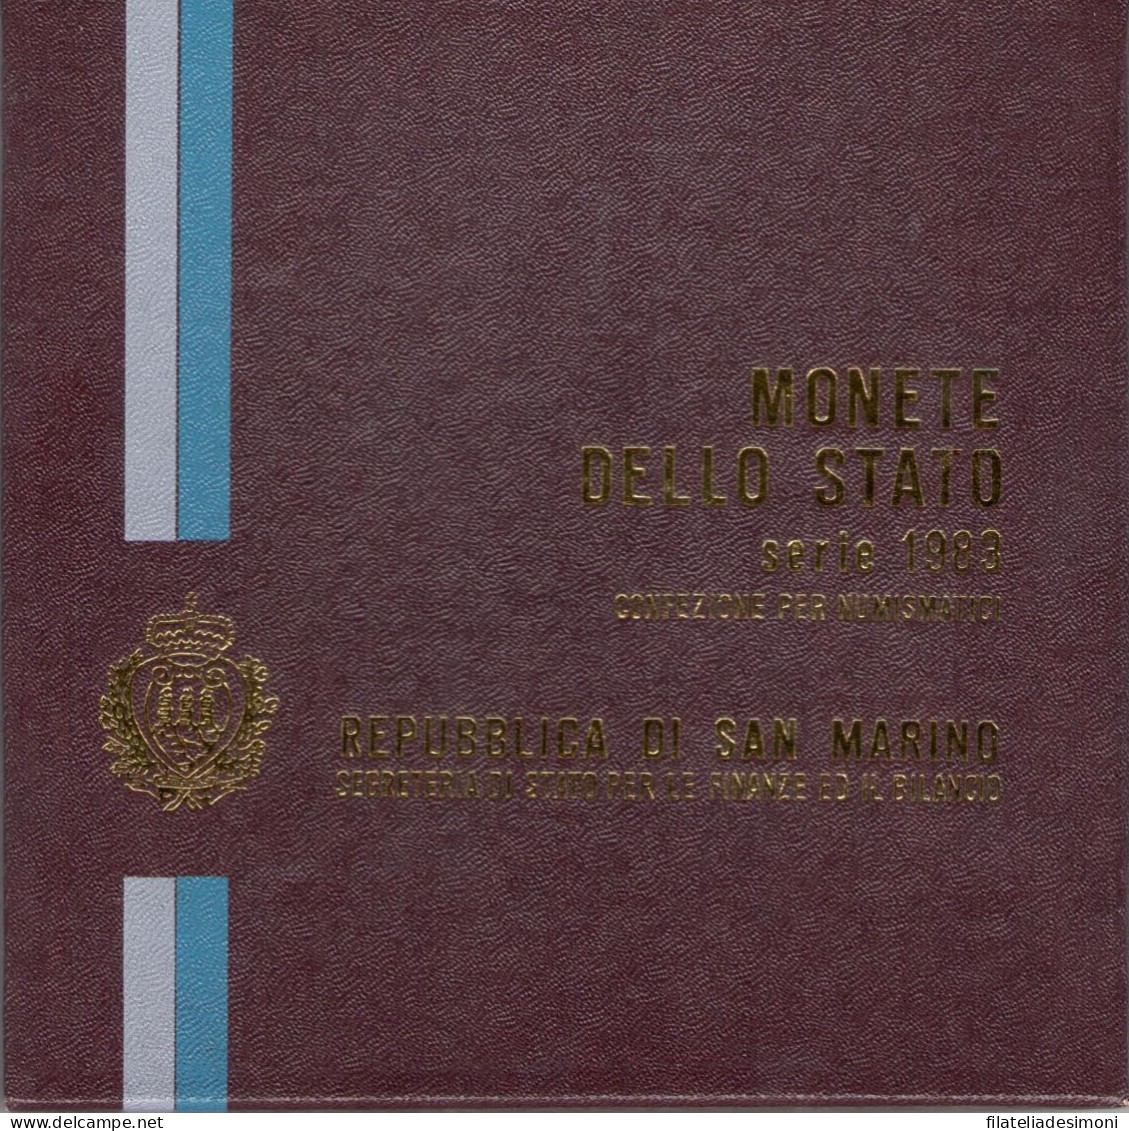 1983 Repubblica Di San Marino, Monete Divisionali,FDC - Saint-Marin